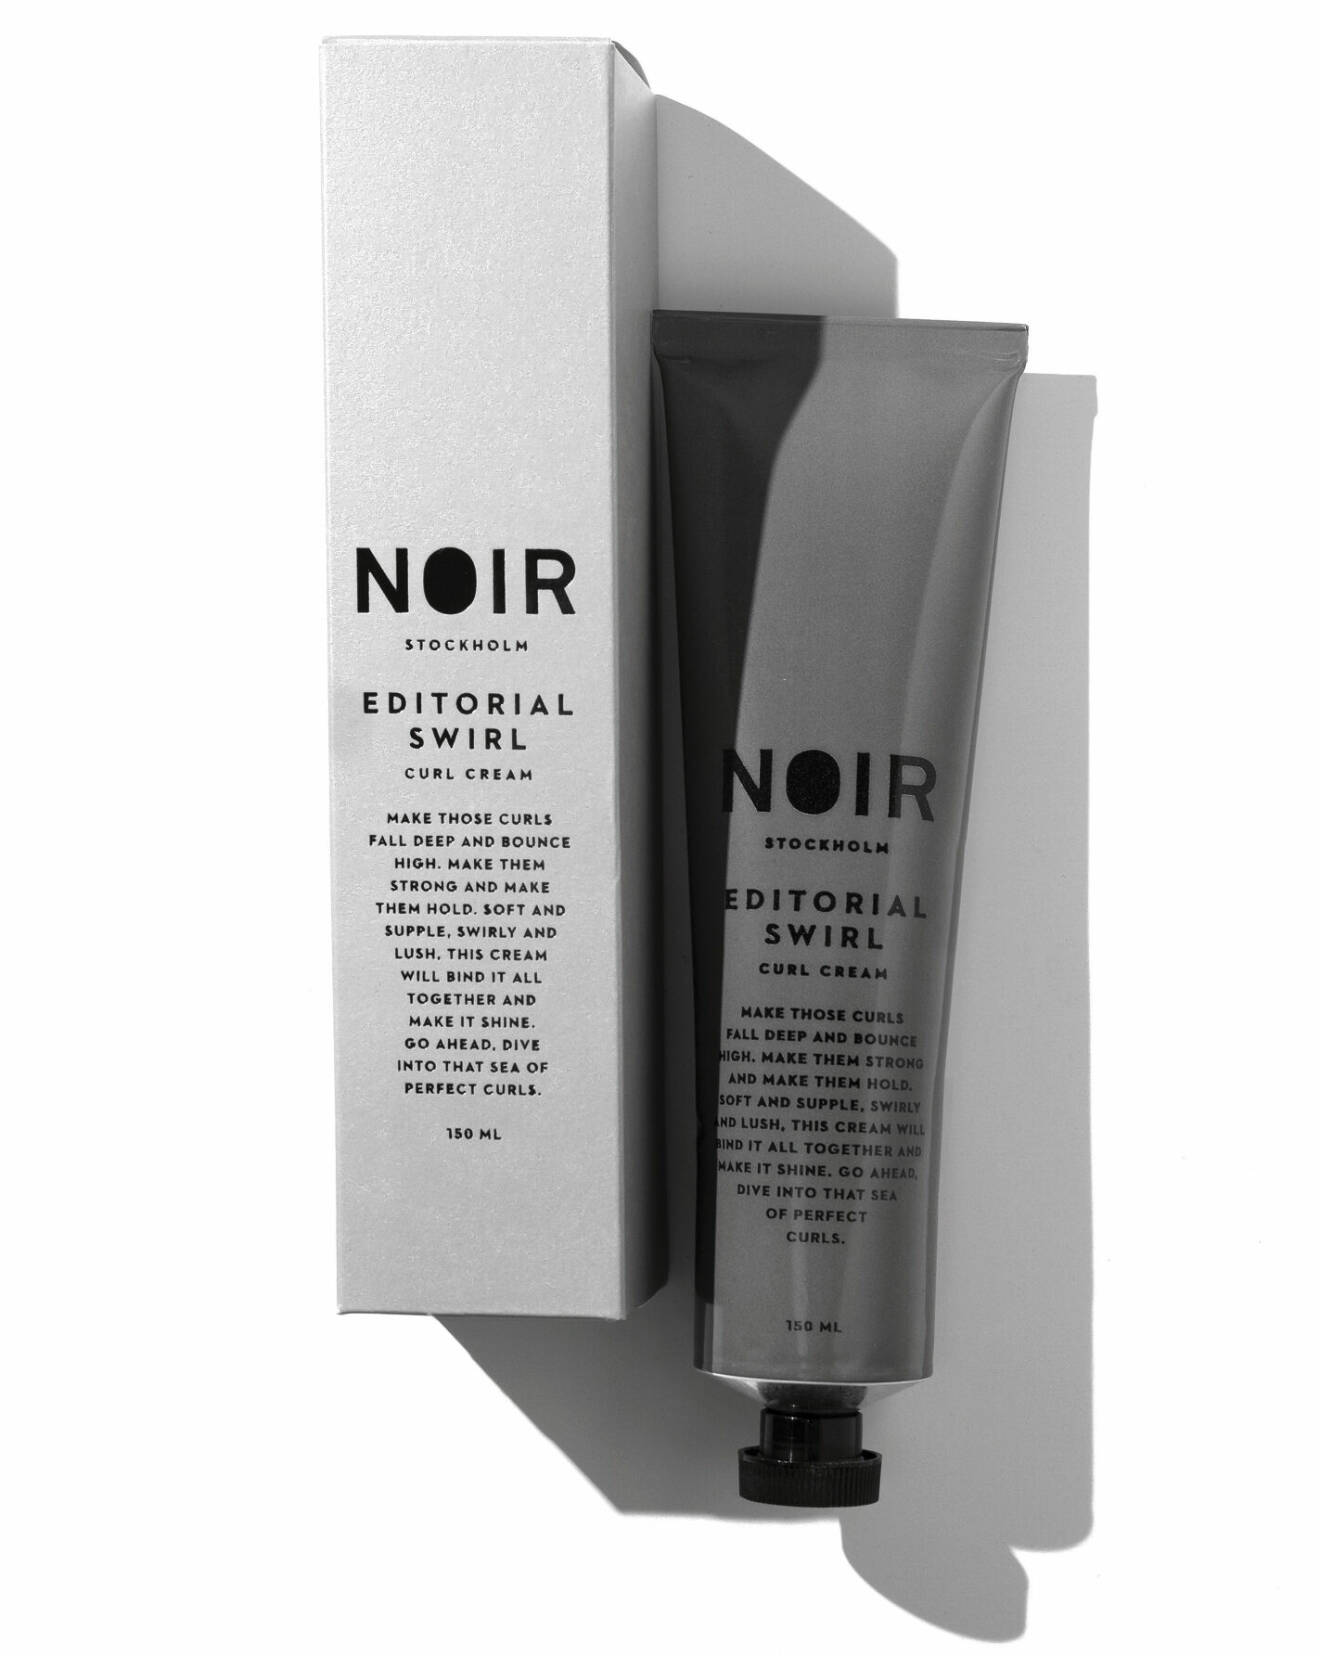 Bästa produkterna för lockigt hår 2023, Noir stockholm Editorial Swirl från Noir Stockholm